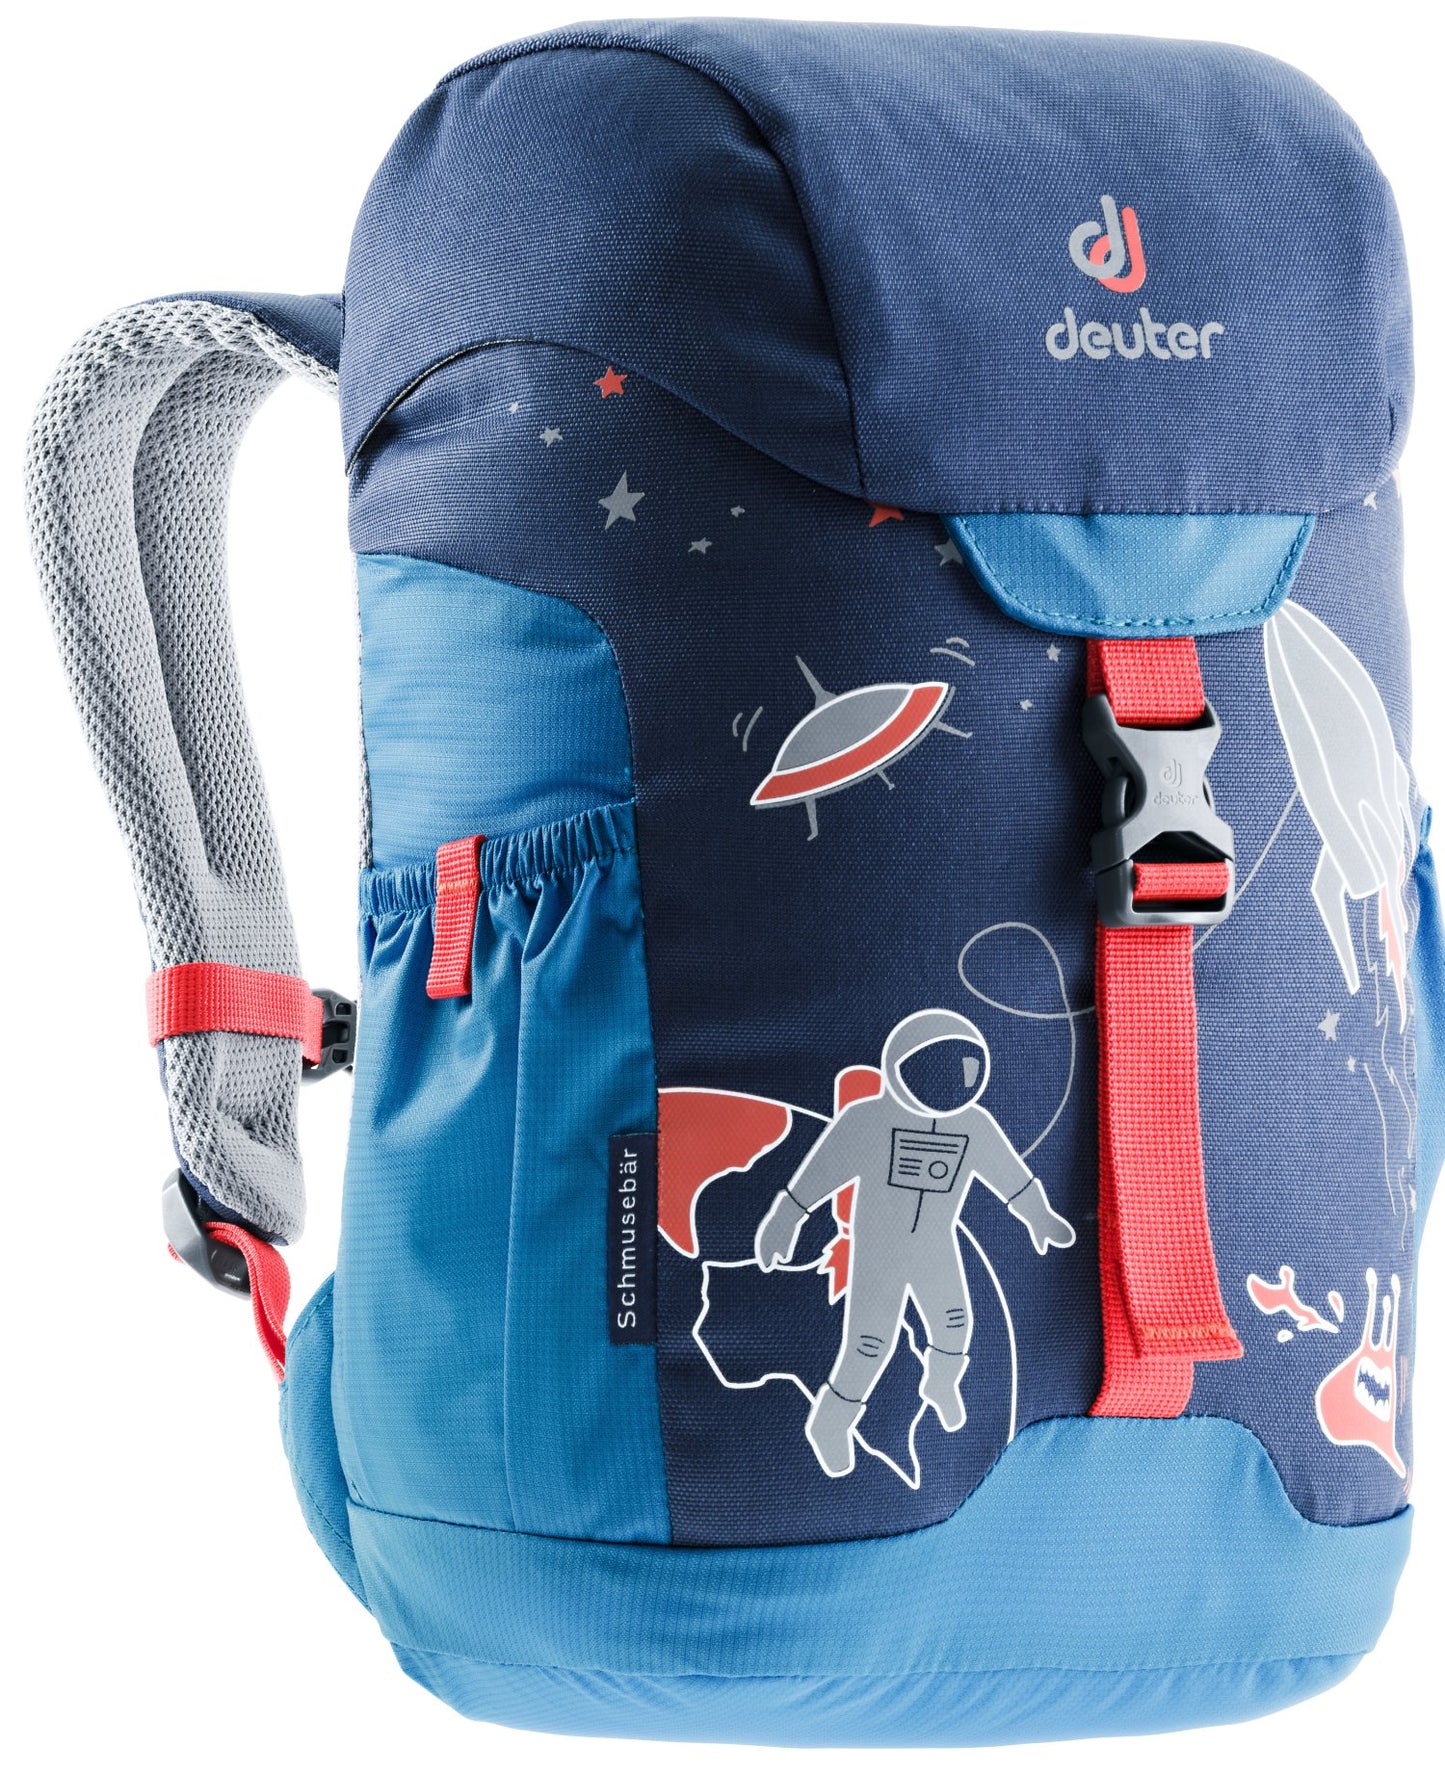 Deuter Schmusebär 8L Children's Backpack